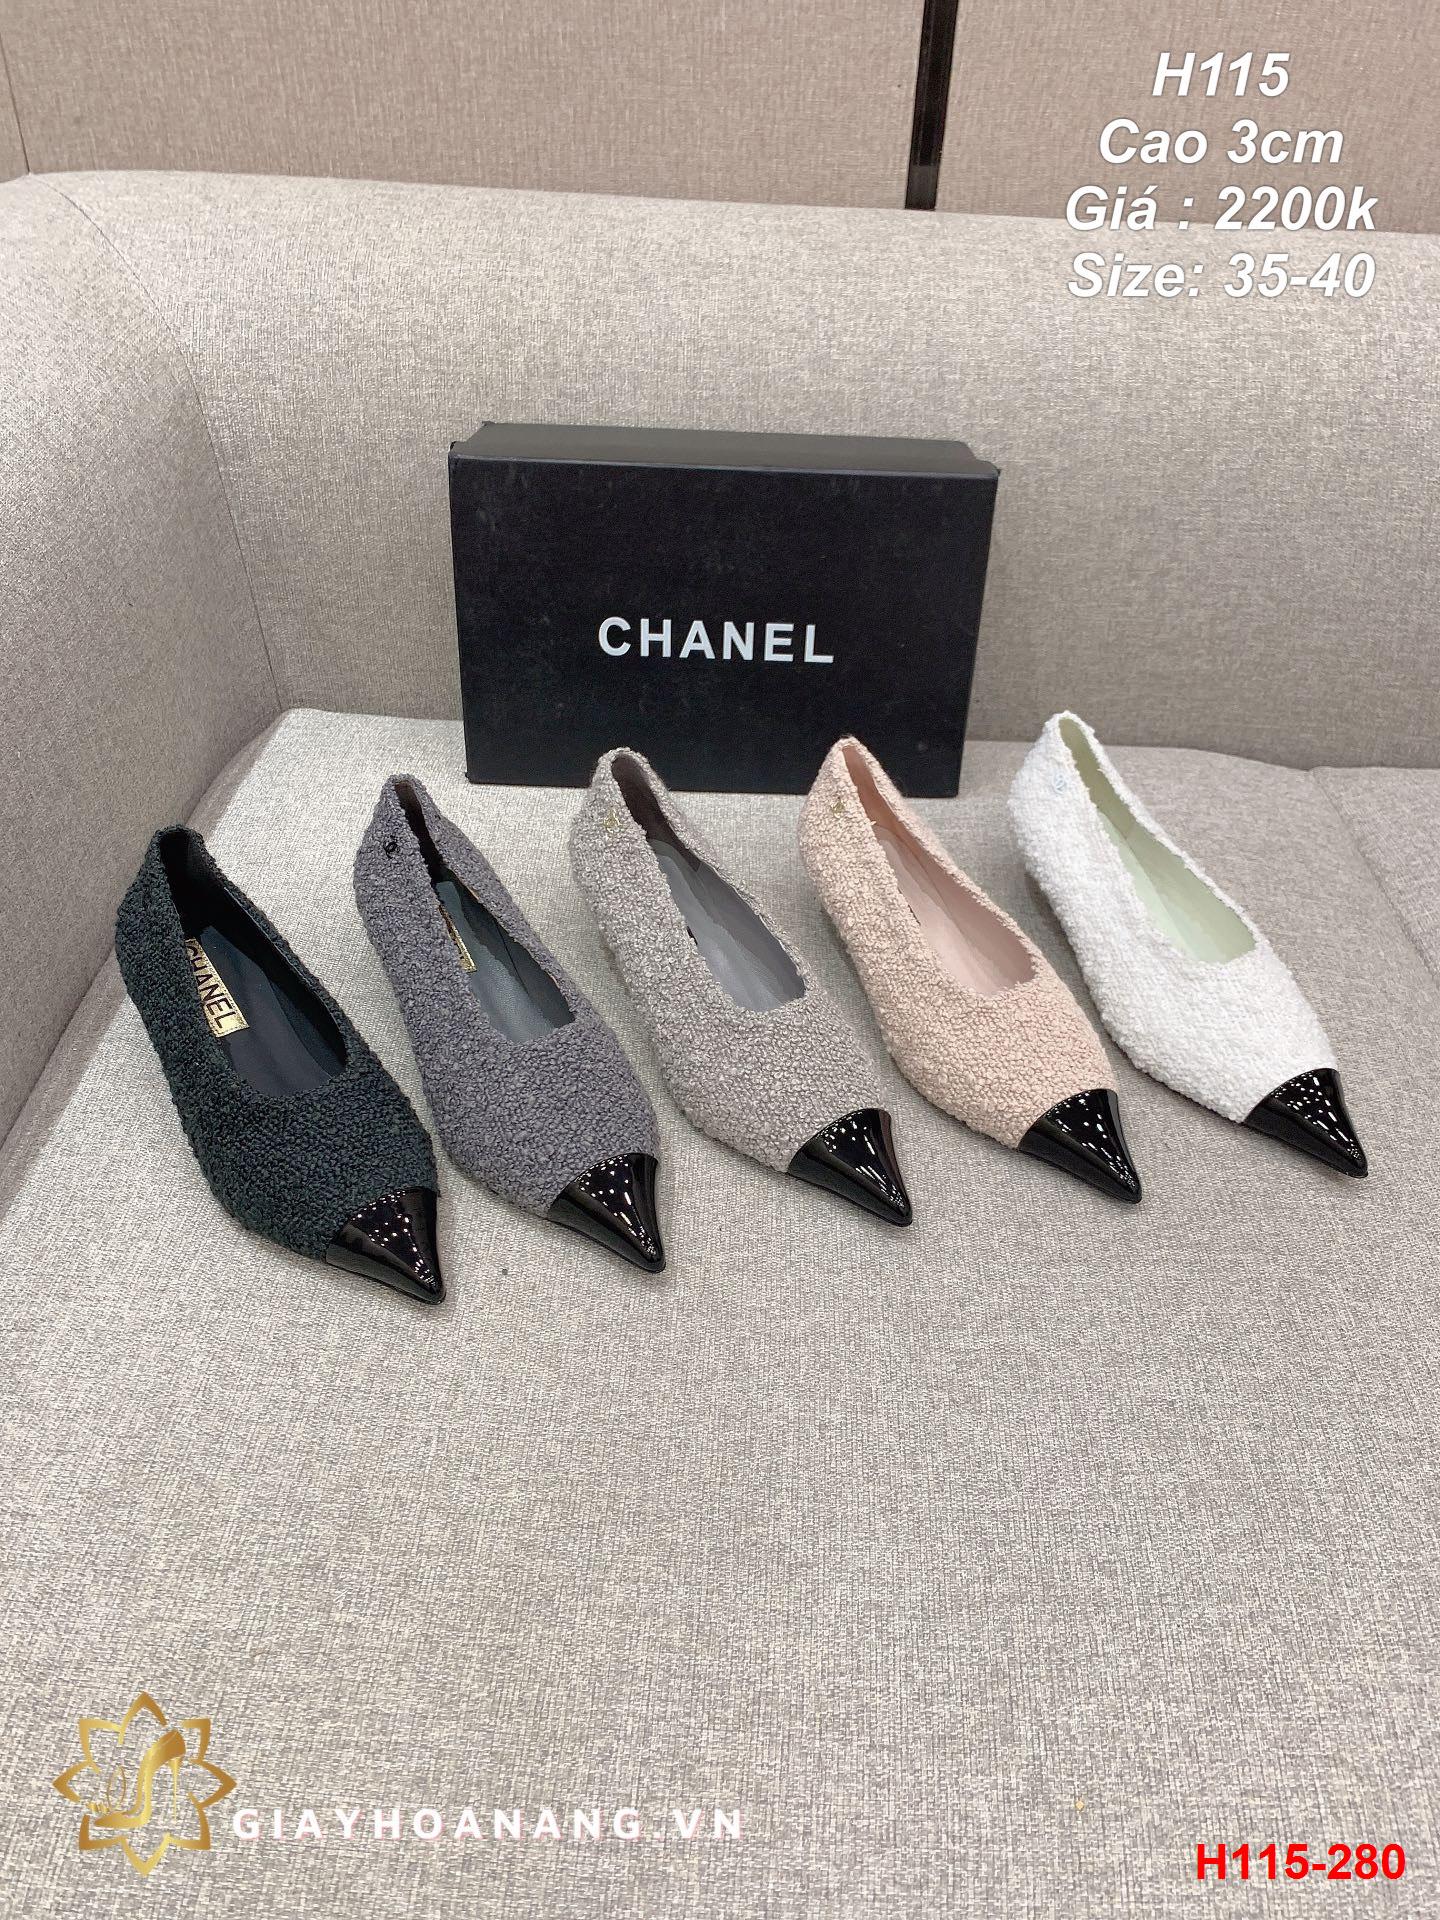 H115-280 Chanel giày cao 3cm siêu cấp